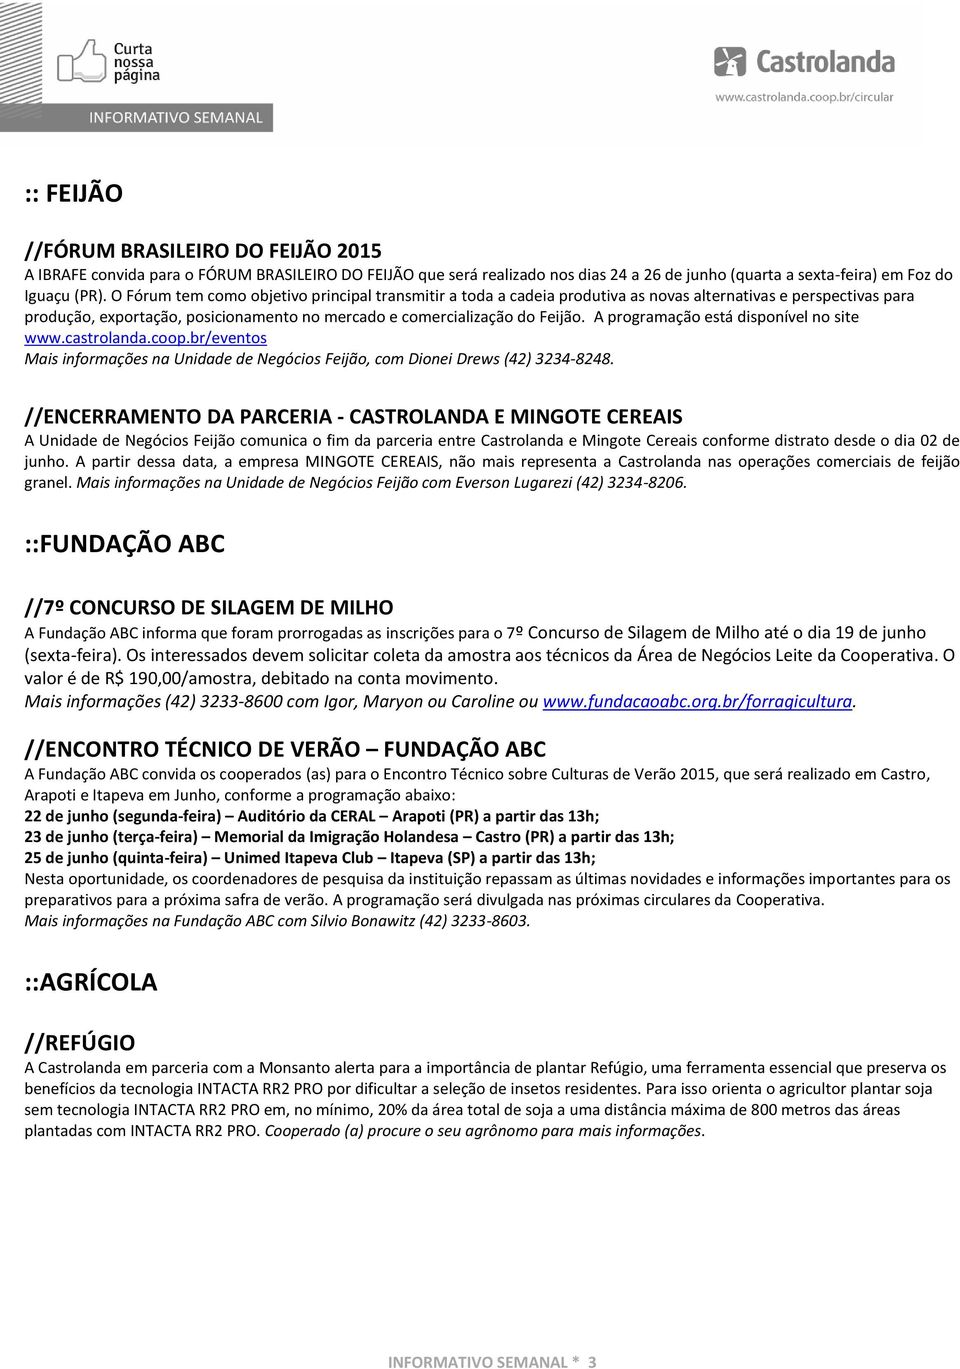 A programação está disponível no site www.castrolanda.coop.br/eventos Mais informações na Unidade de Negócios Feijão, com Dionei Drews (42) 3234-8248.